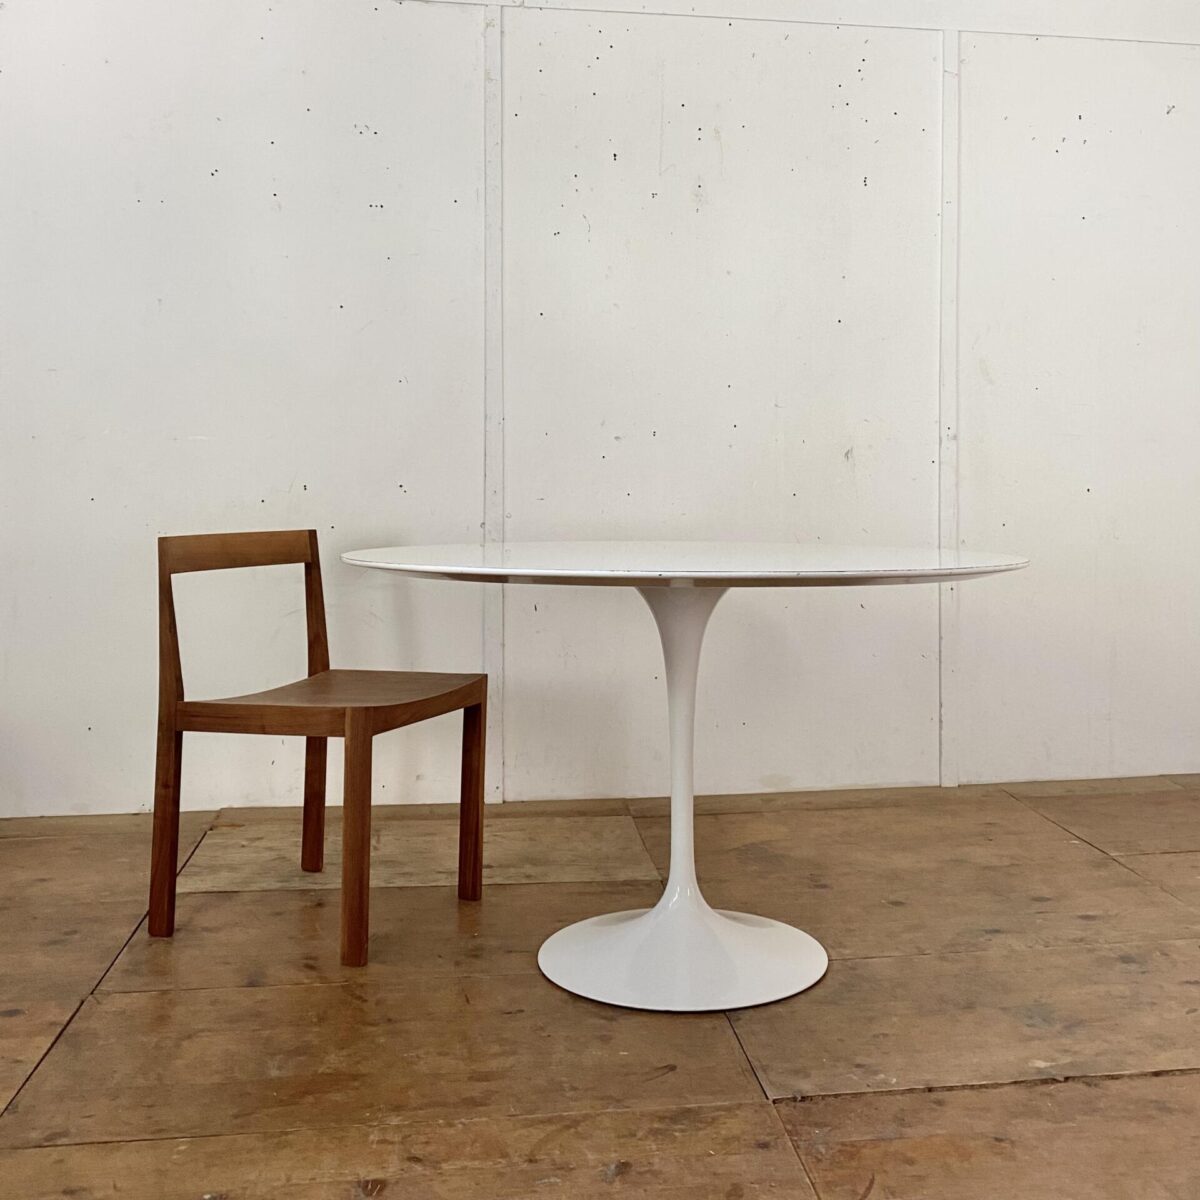 Deuxieme.shop Runder Tulpenfuss Tisch von Eero Sarinnen. Entwurf aus den 50er Jahren, hergestellt von Knoll International. Durchmesser 120cm Höhe 70.5cm. Das Tischblatt ist mit weissem Kunstharz beschichtet, die abgeflachte Tischkante ist lackiert.